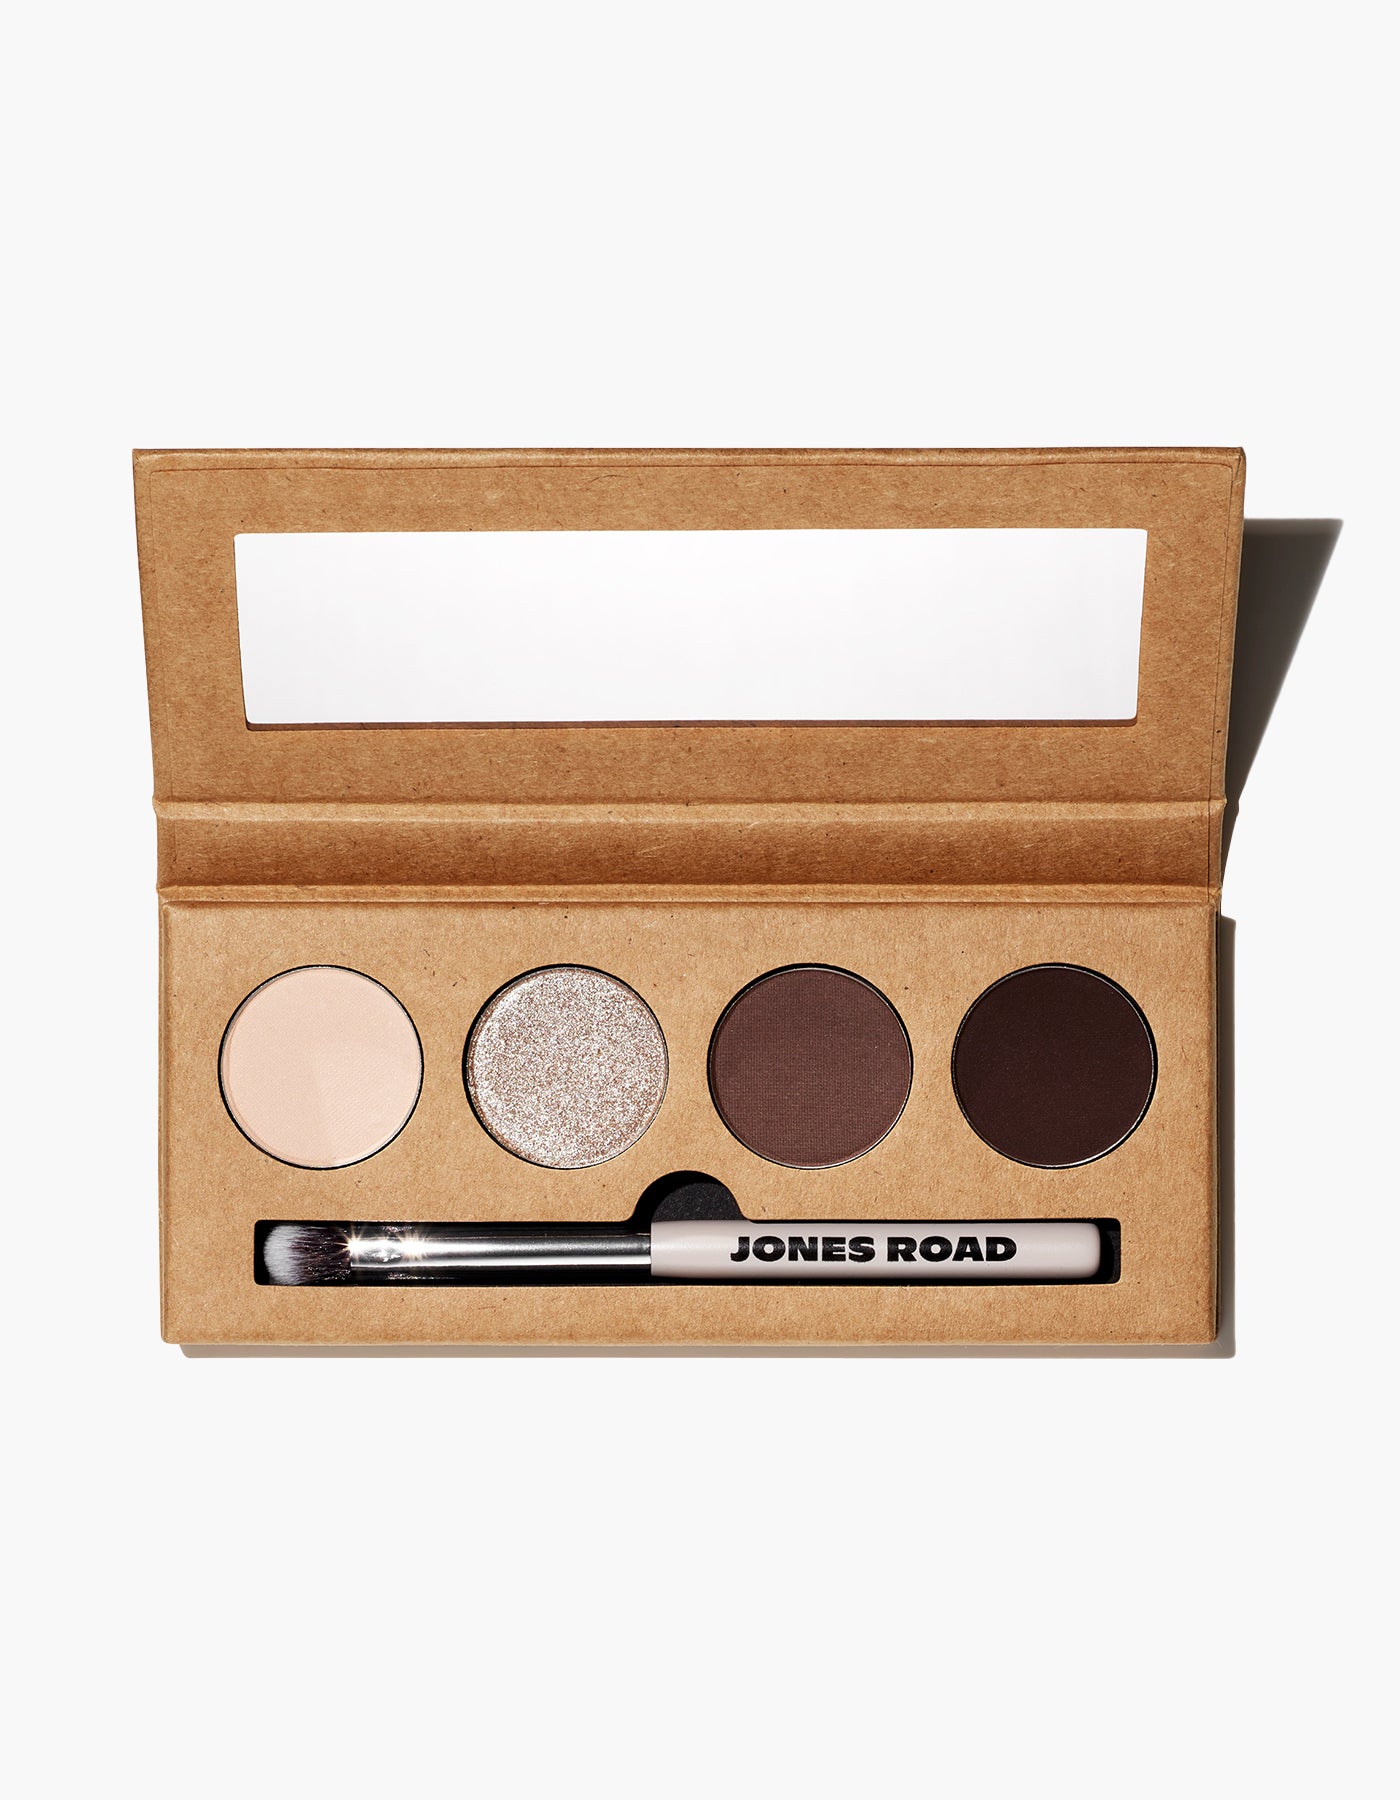 The Eyeshadow Palette 2.0 by Jones Road